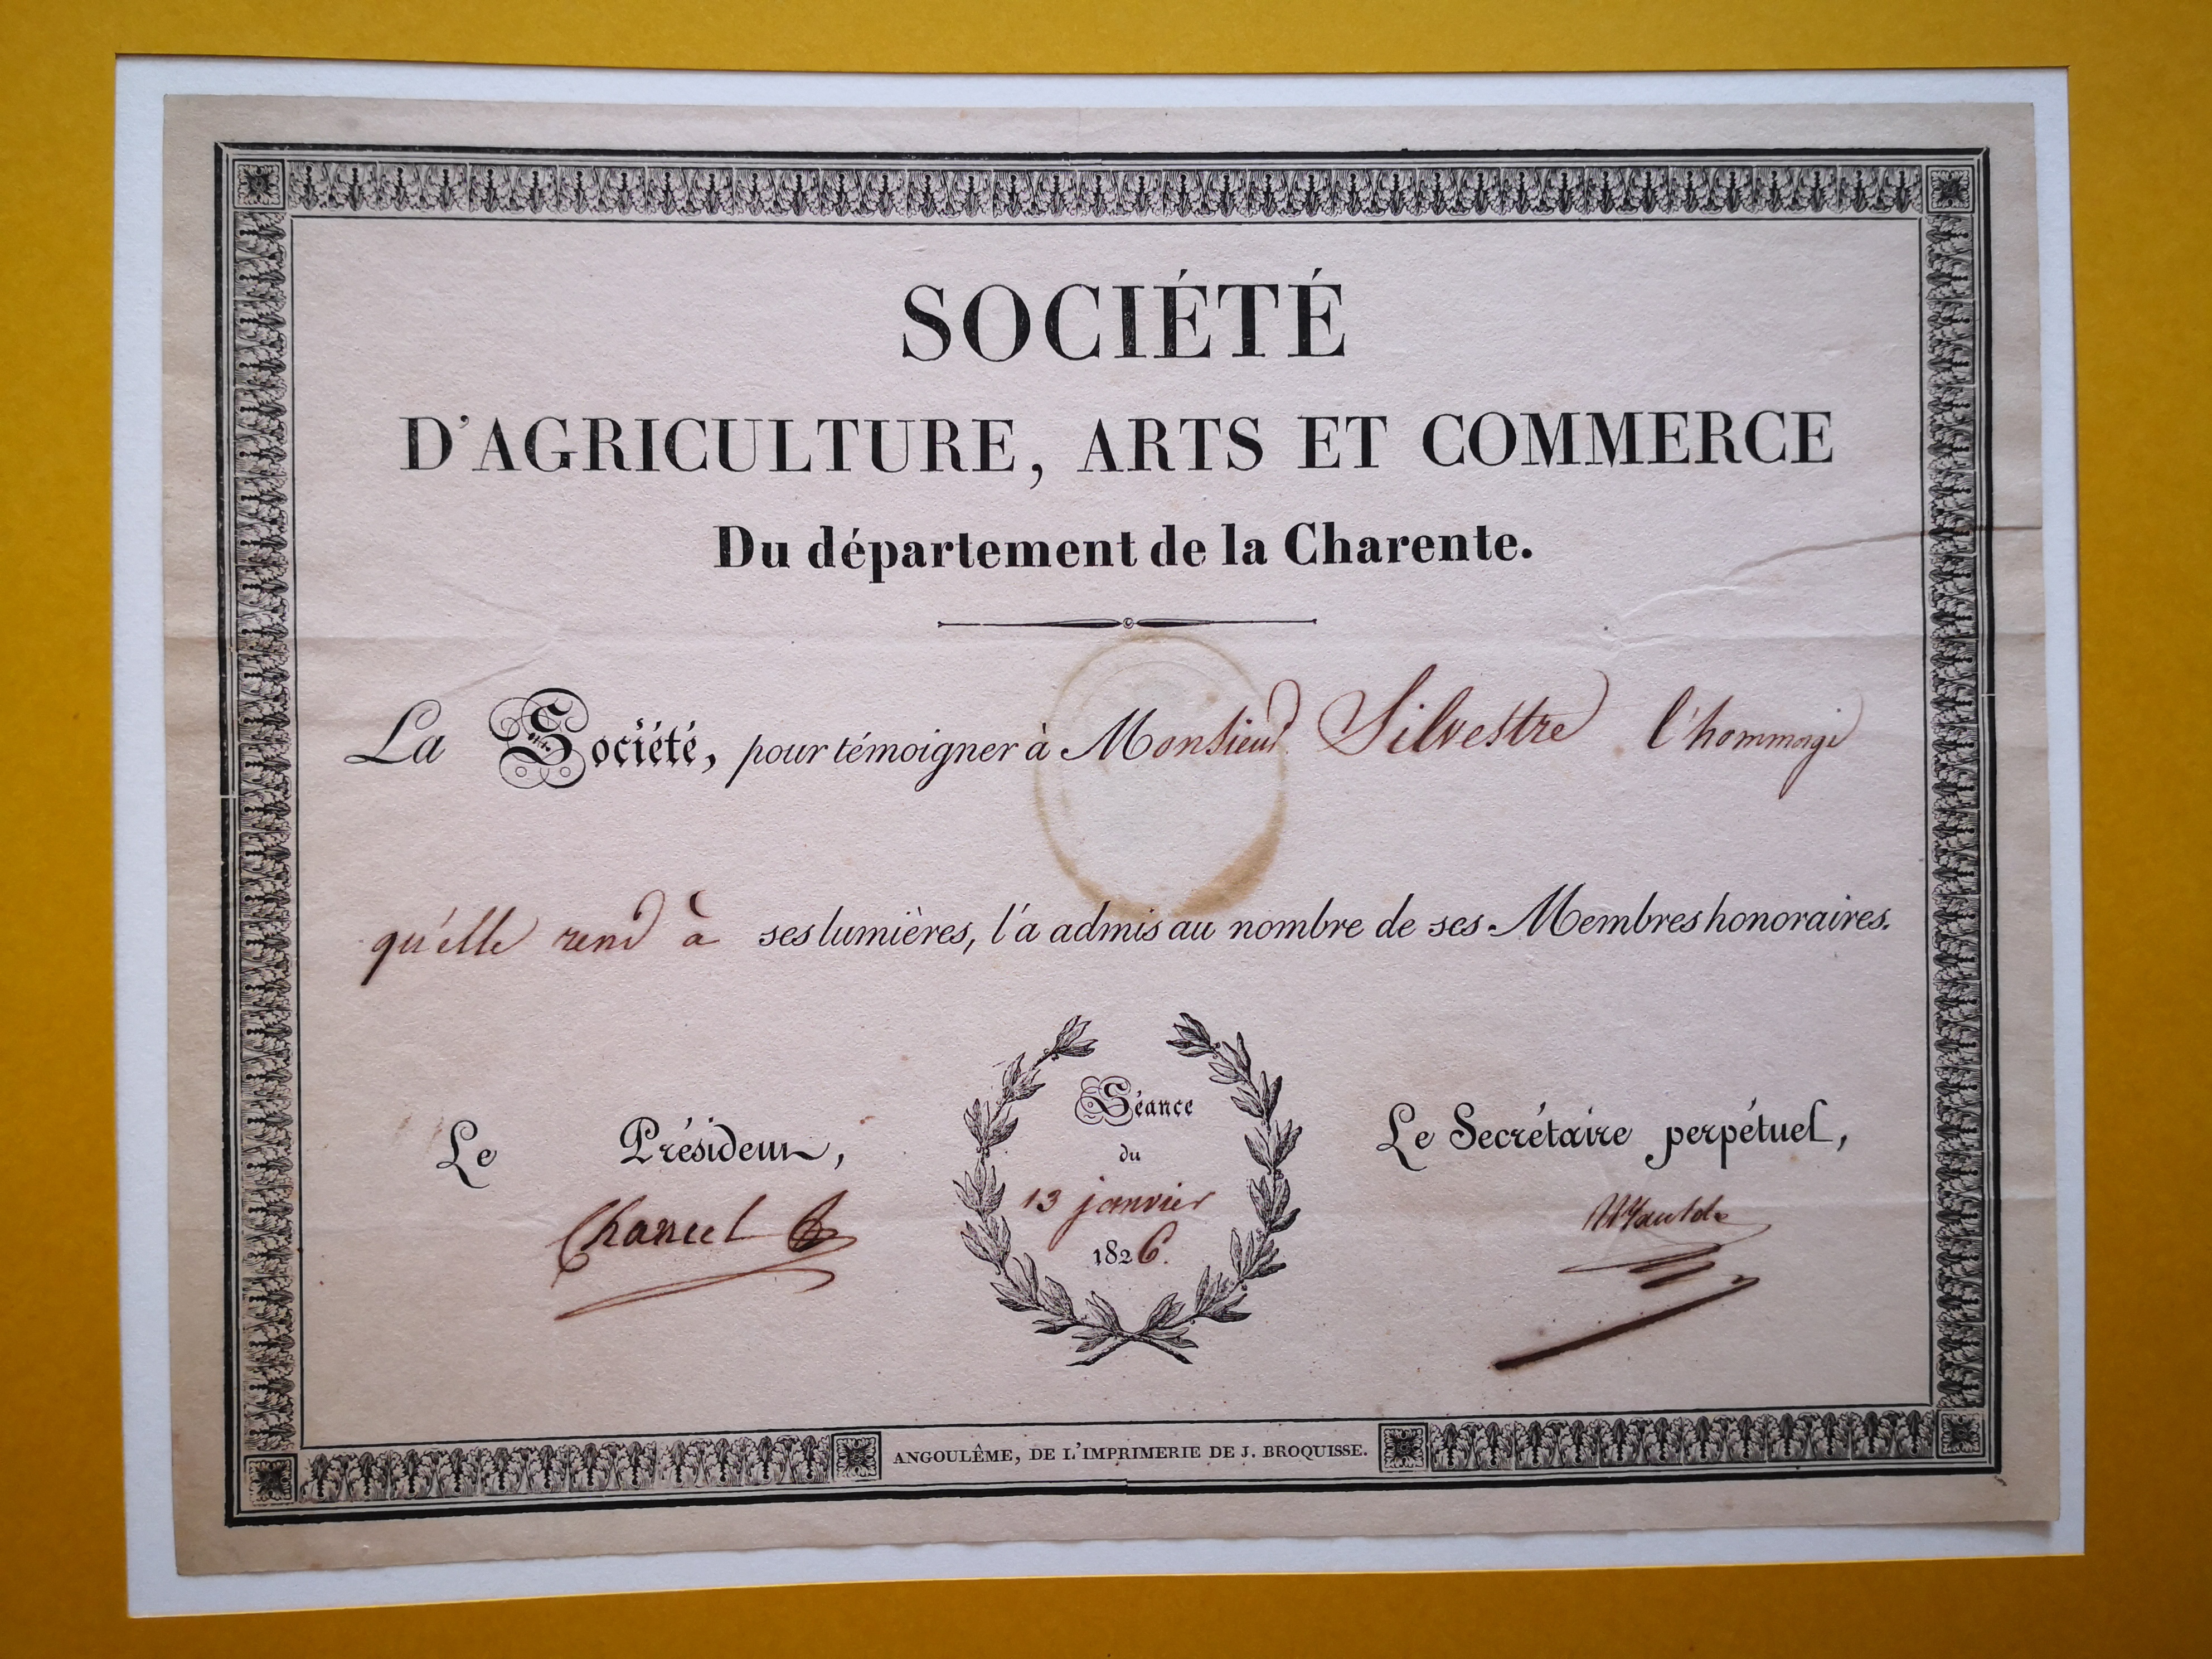  Diplôme de membre honoraire de la Société d'Agriculture, Arts et Commerce du département de la Charente décerné à Augustin-François de Silvestre - Documents